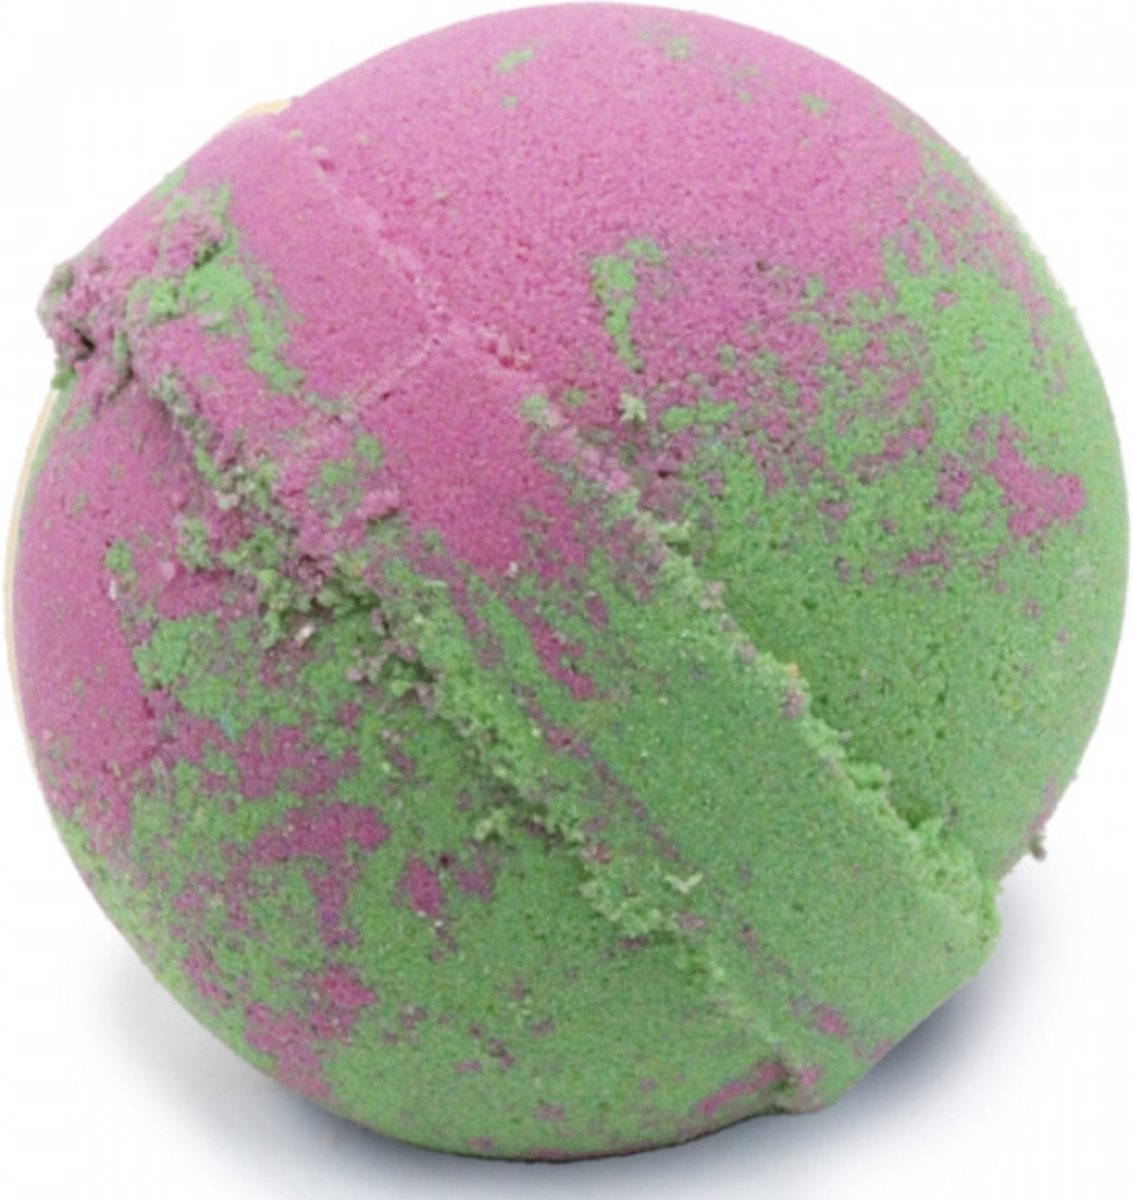 Fruitige bruisballen-badbommen-4 stuks per verpakking-gekleurde bad-zoetig-gezellig-handgemaakt-ontspanning